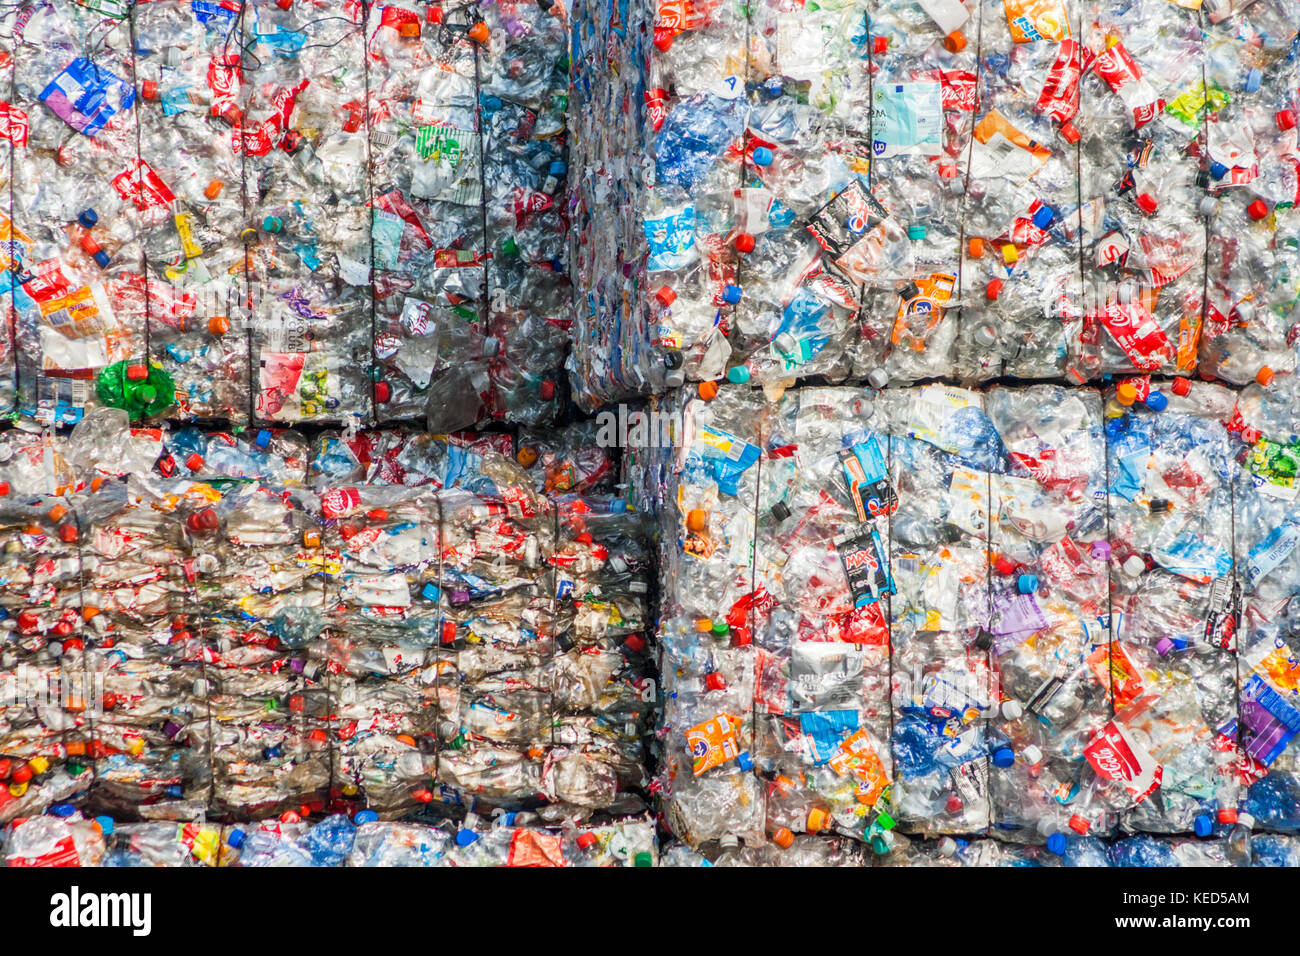 Arnheim, Niederlande - Mar 15, 2011: recycelte Plastikflaschen in Ballen an einem stillen Recycling-Verfahren zugeführt werden. Stockfoto